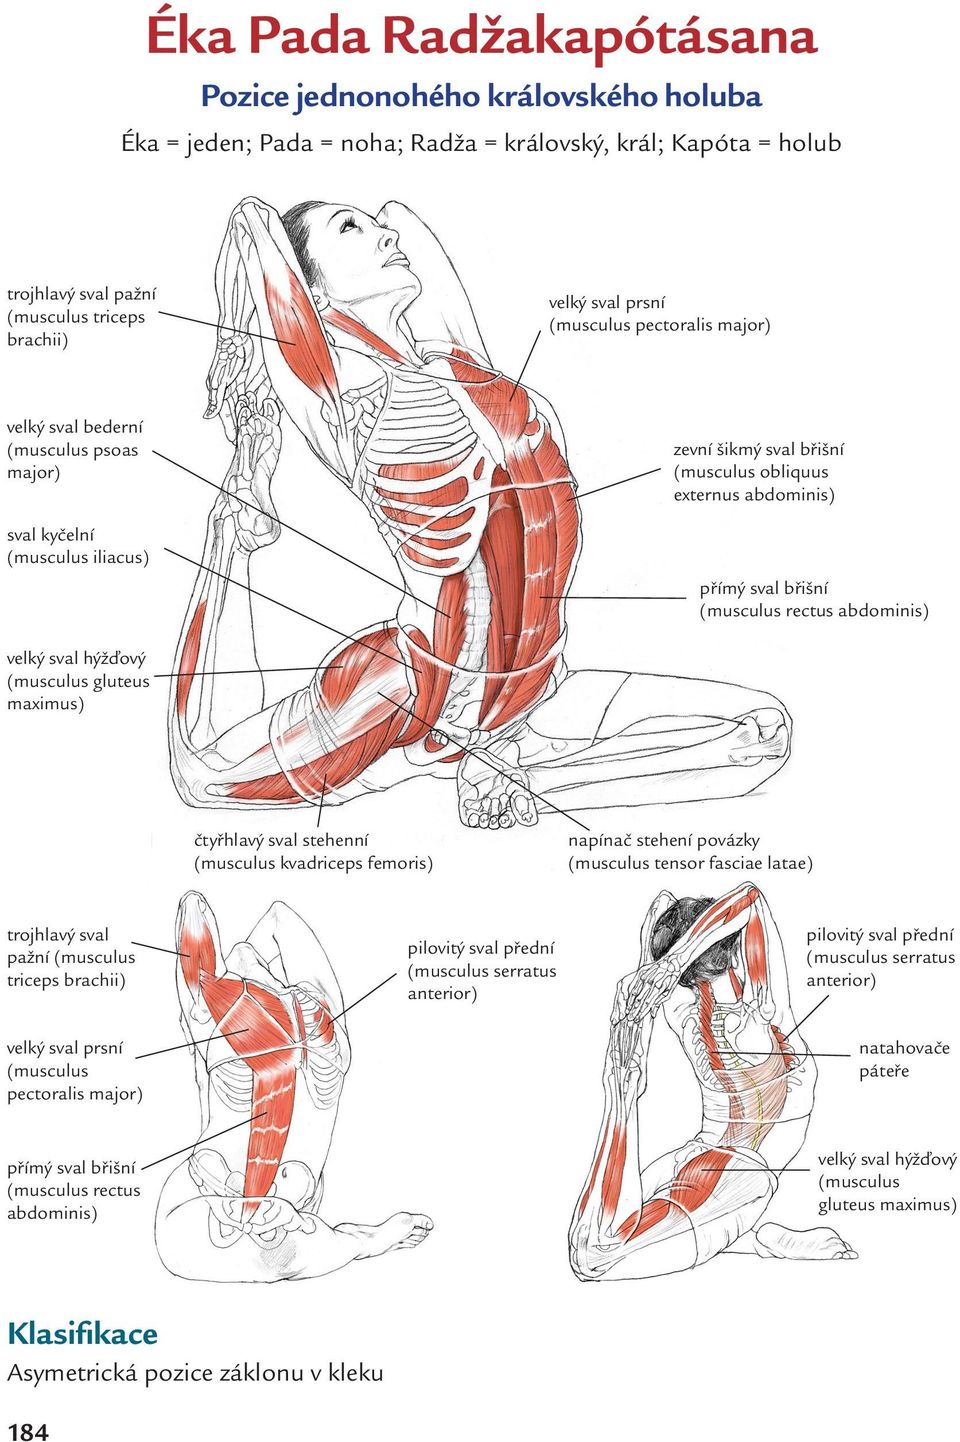 abdominis) velký sval hýžďový (musculus gluteus maximus) čtyřhlavý sval stehenní (musculus kvadriceps femoris) trojhlavý sval pažní (musculus triceps brachii) velký sval prsní (musculus pectoralis